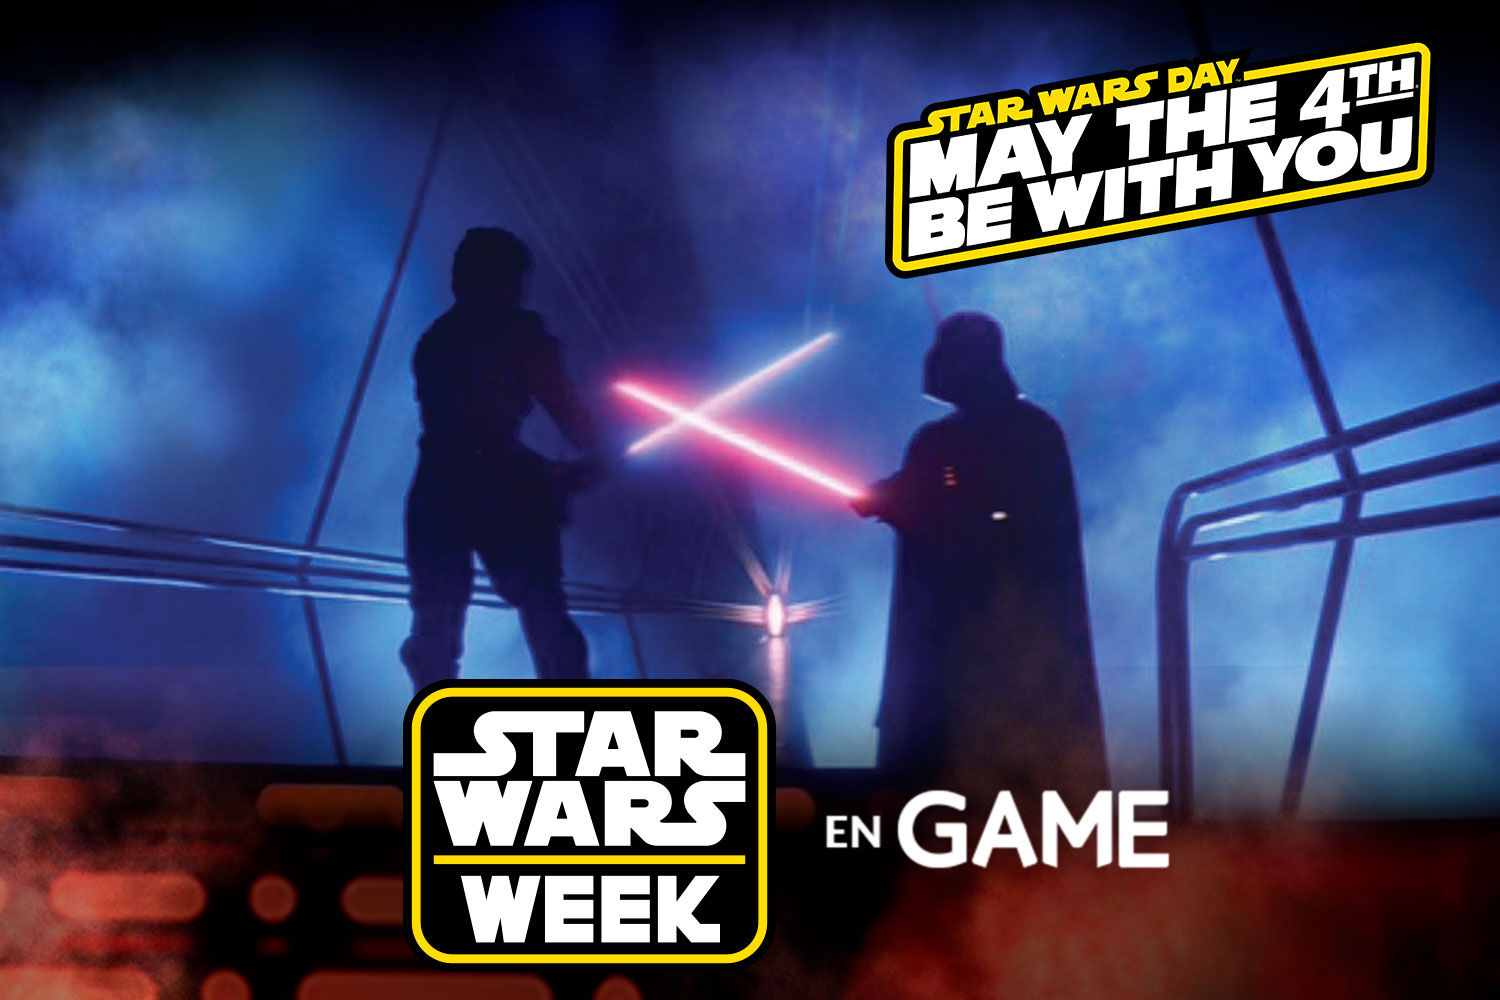 Star Wars Week